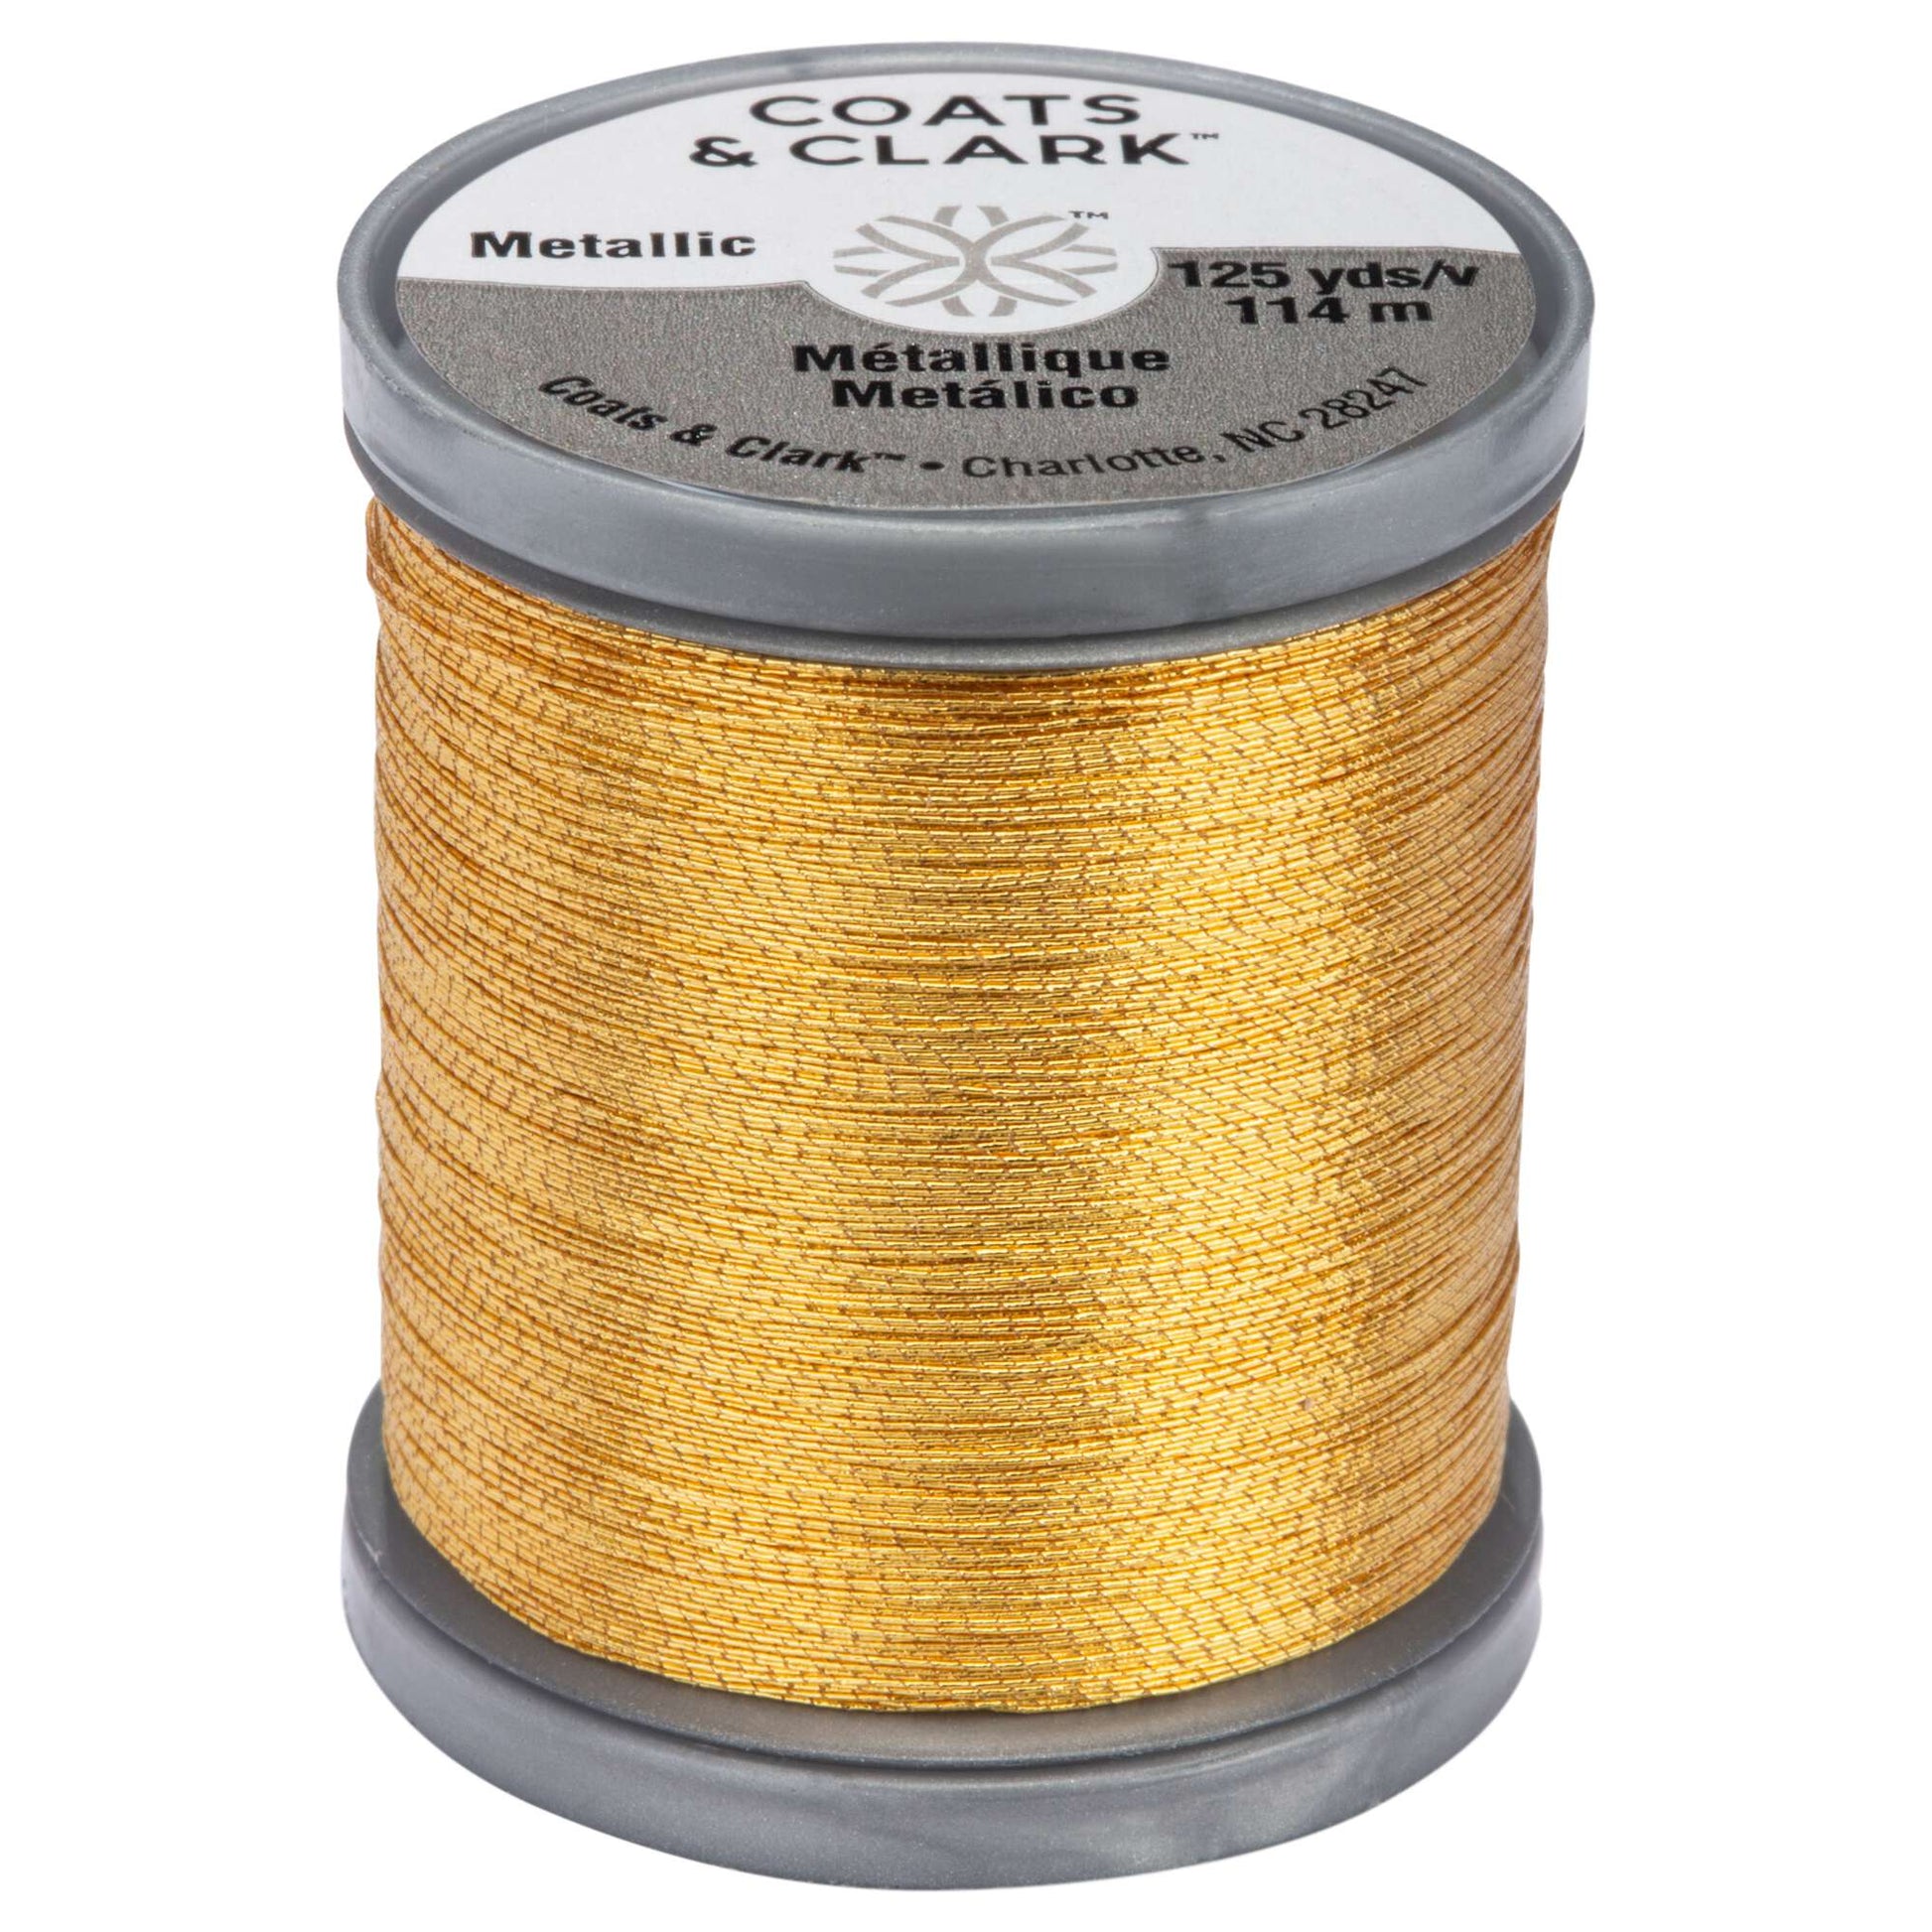 Coats & Clark Metallic Embroidery Thread (125 Yards)